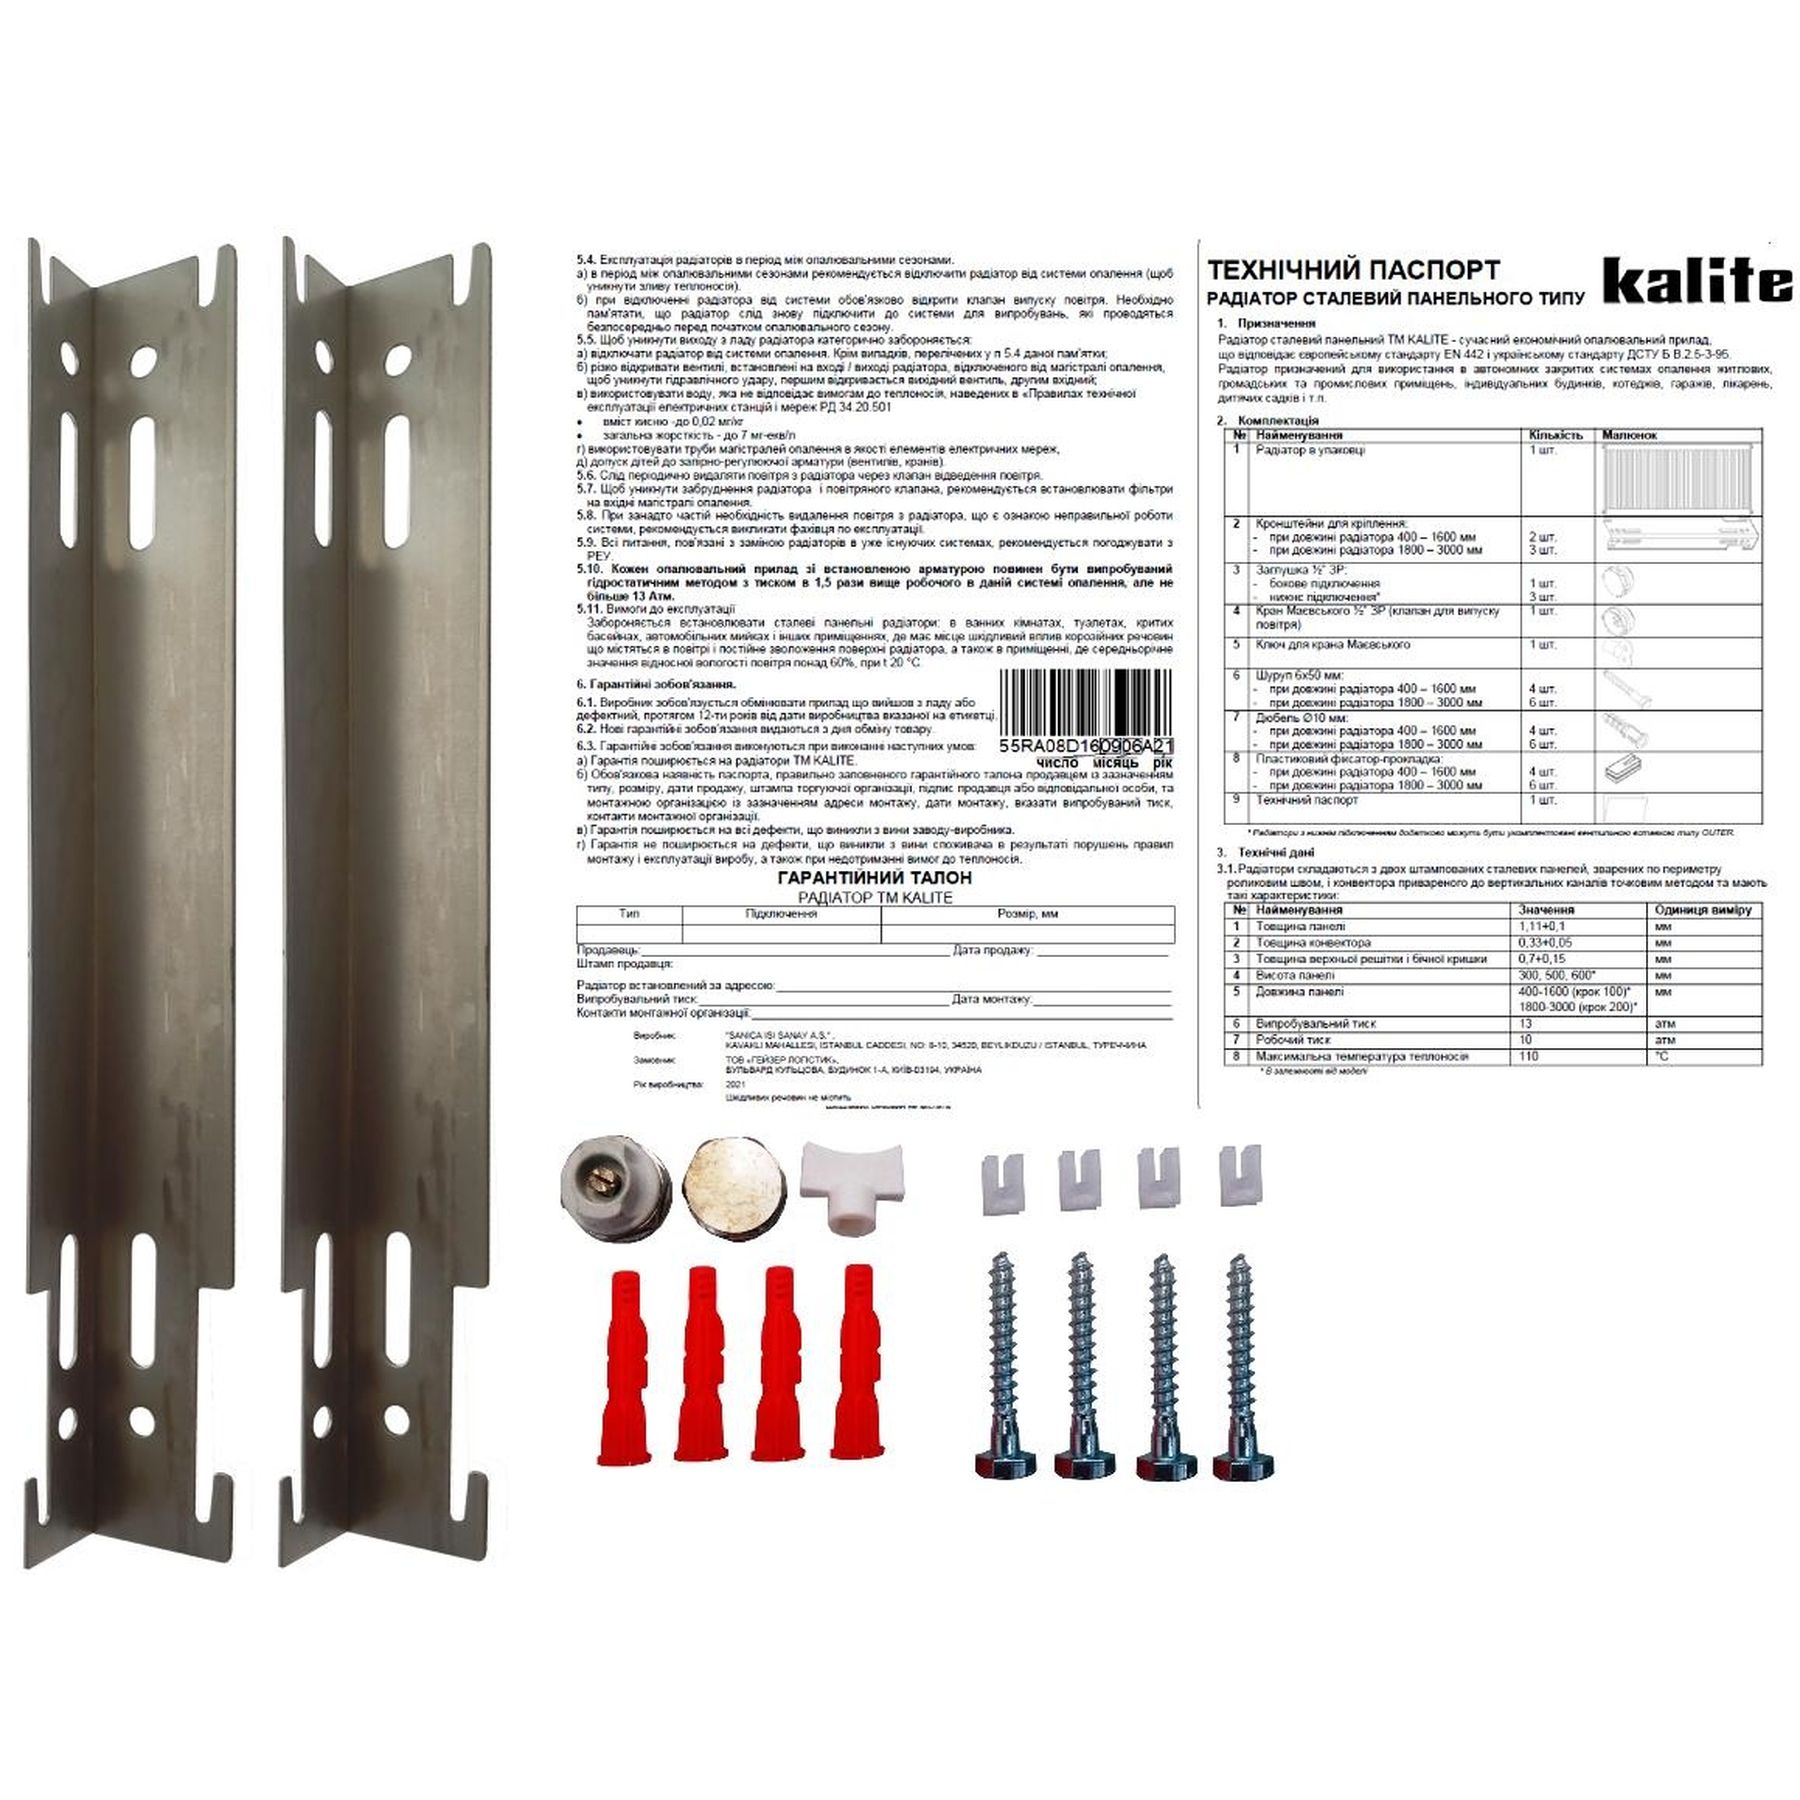 Радиатор для отопления Kalite 11 бок 500х1400 цена 3567.00 грн - фотография 2